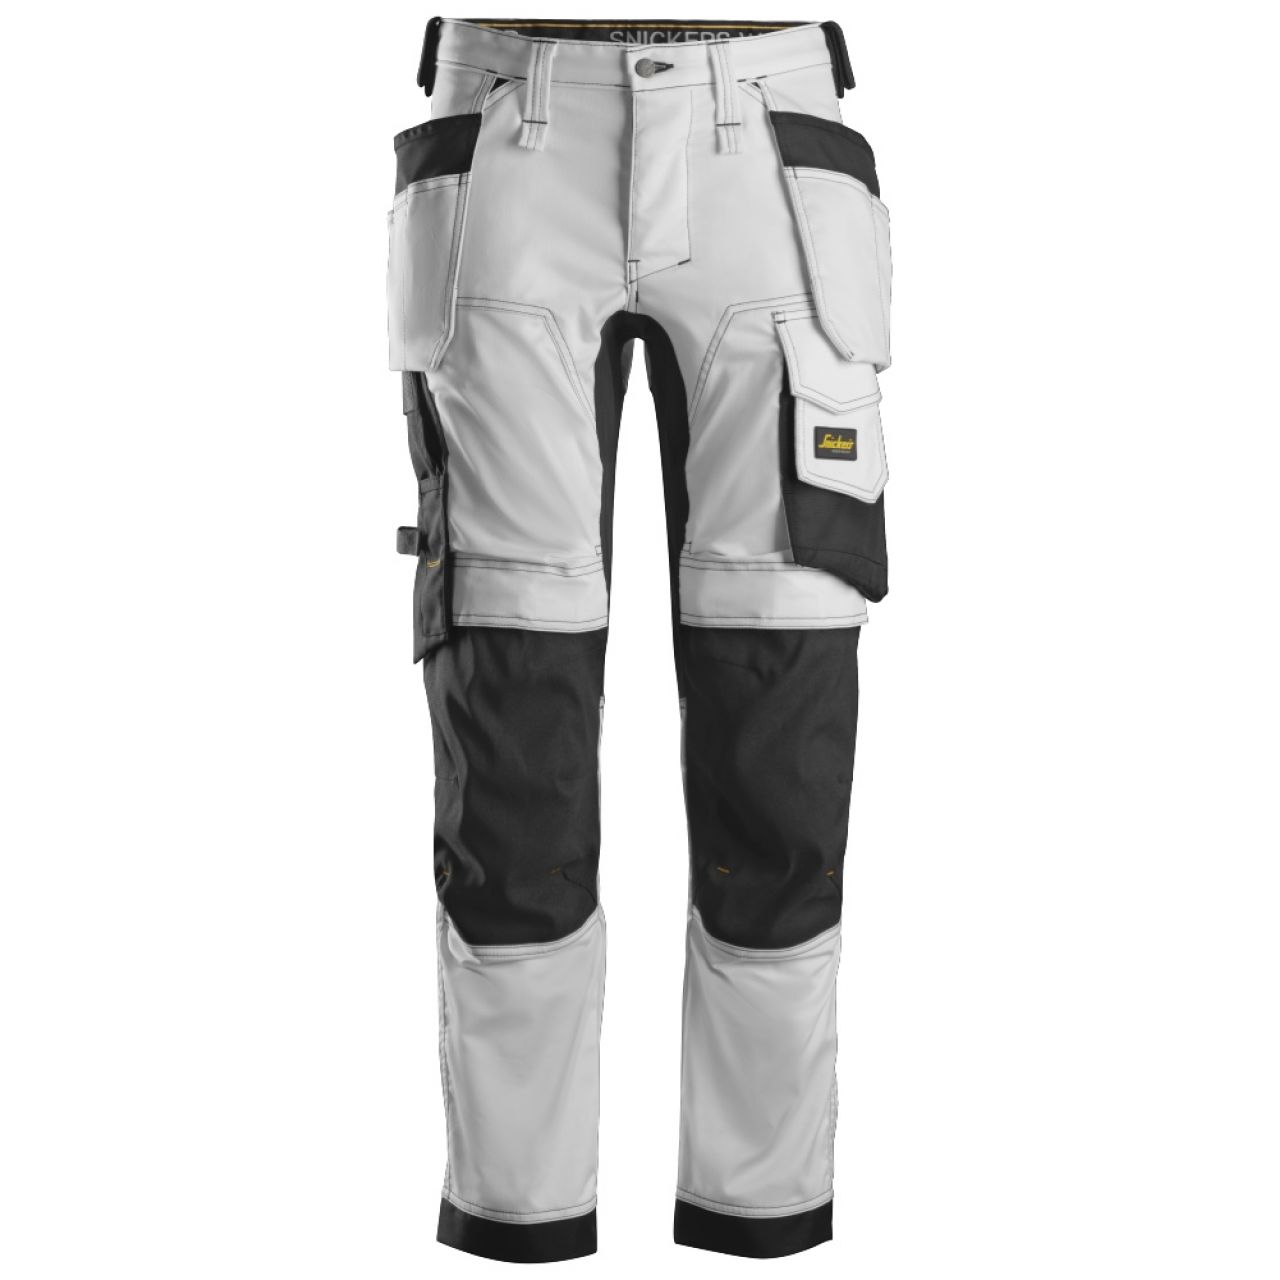 6241 Pantalones largos de trabajo elásticos con bolsillos flotantes AllroundWork blanco-negro talla 62